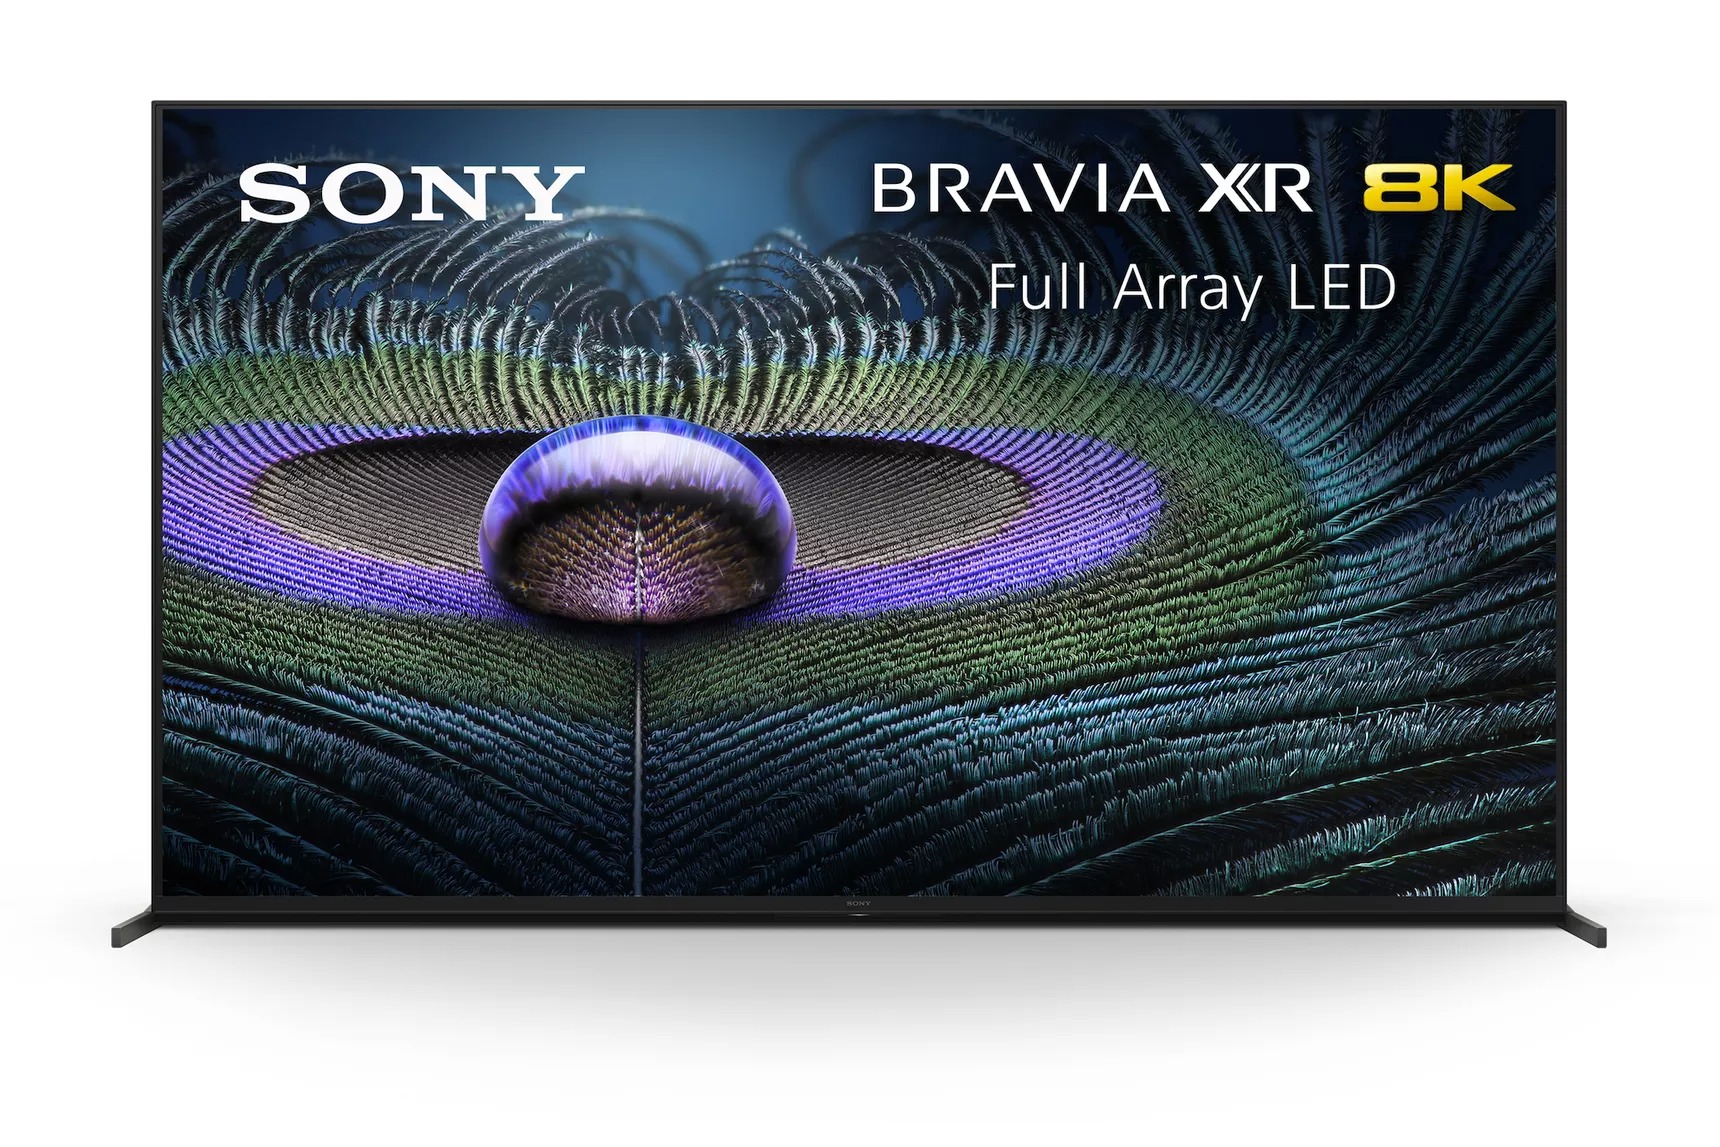 Sony 2021 TV serisi HDMI 2.1 ve Google TV gibi yenilikler ile geliyor